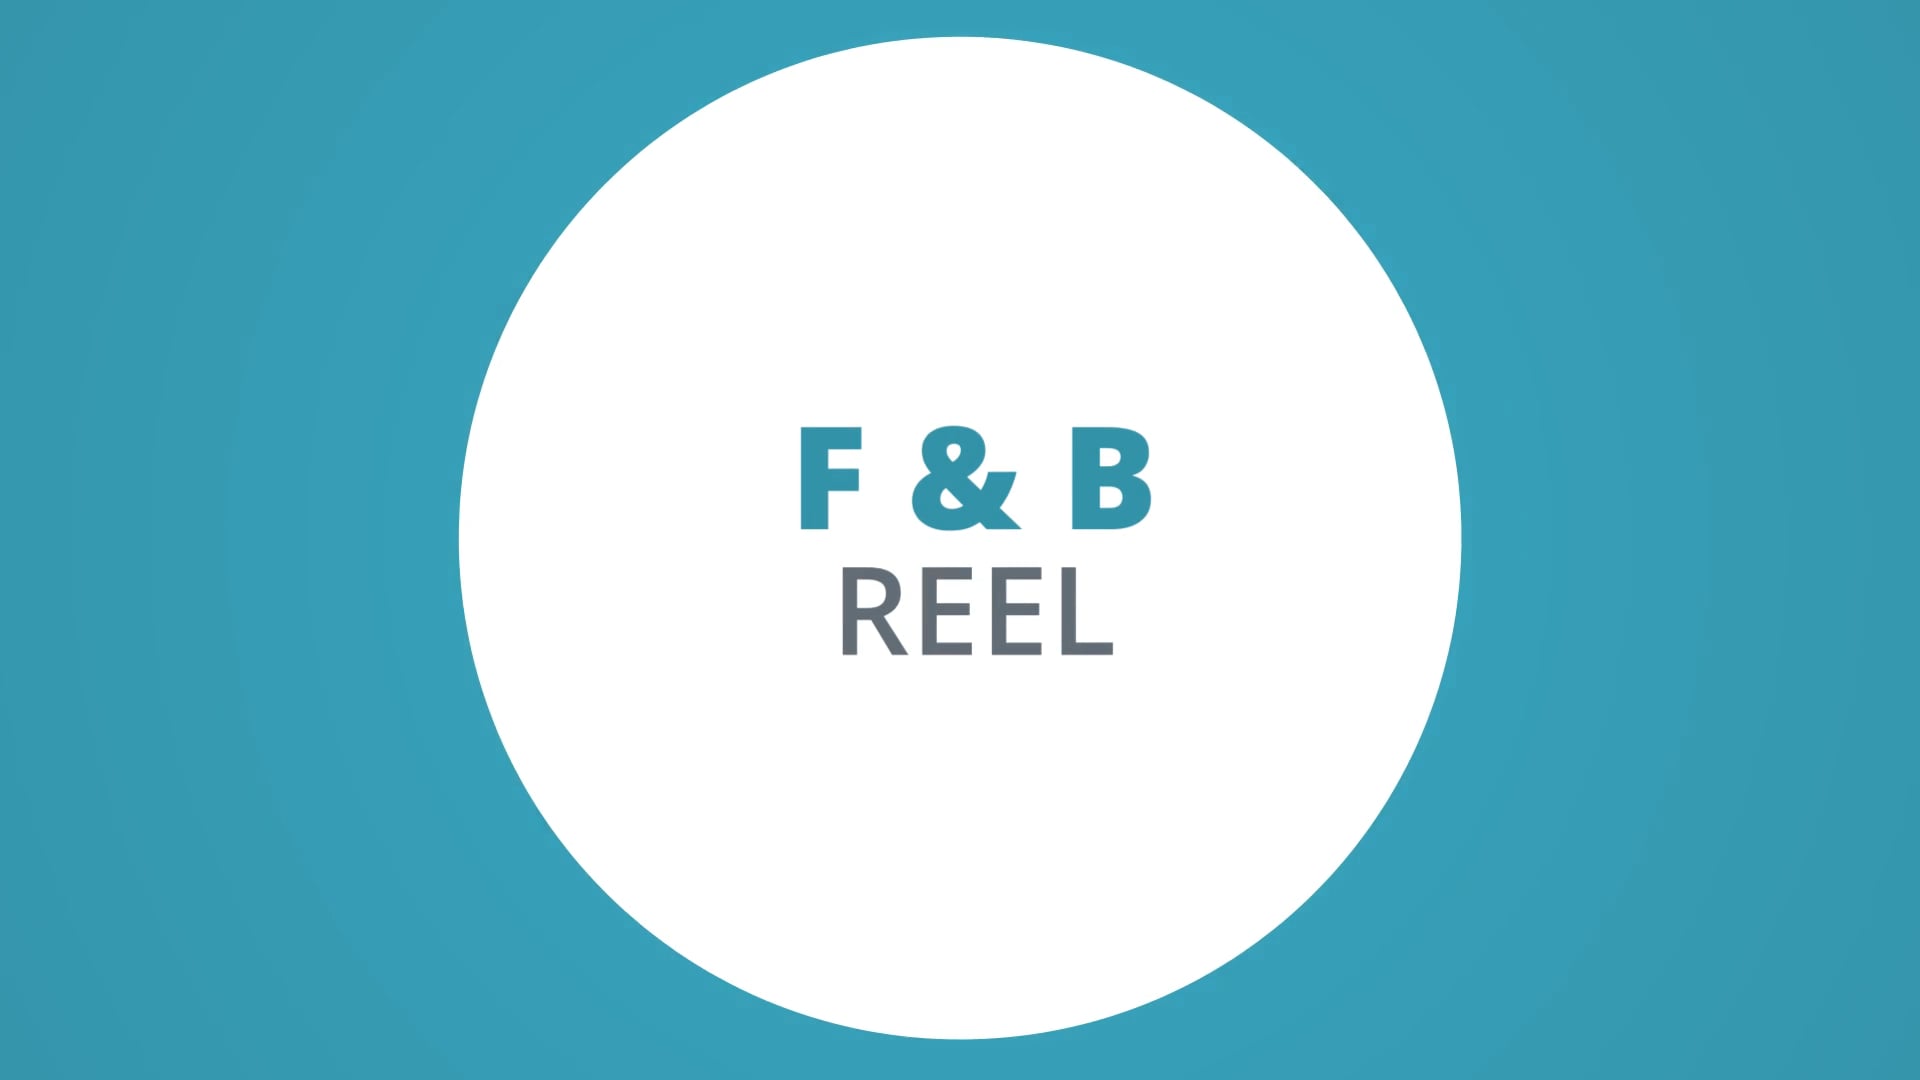 Food & Beverage Reel (Clear Online Video)